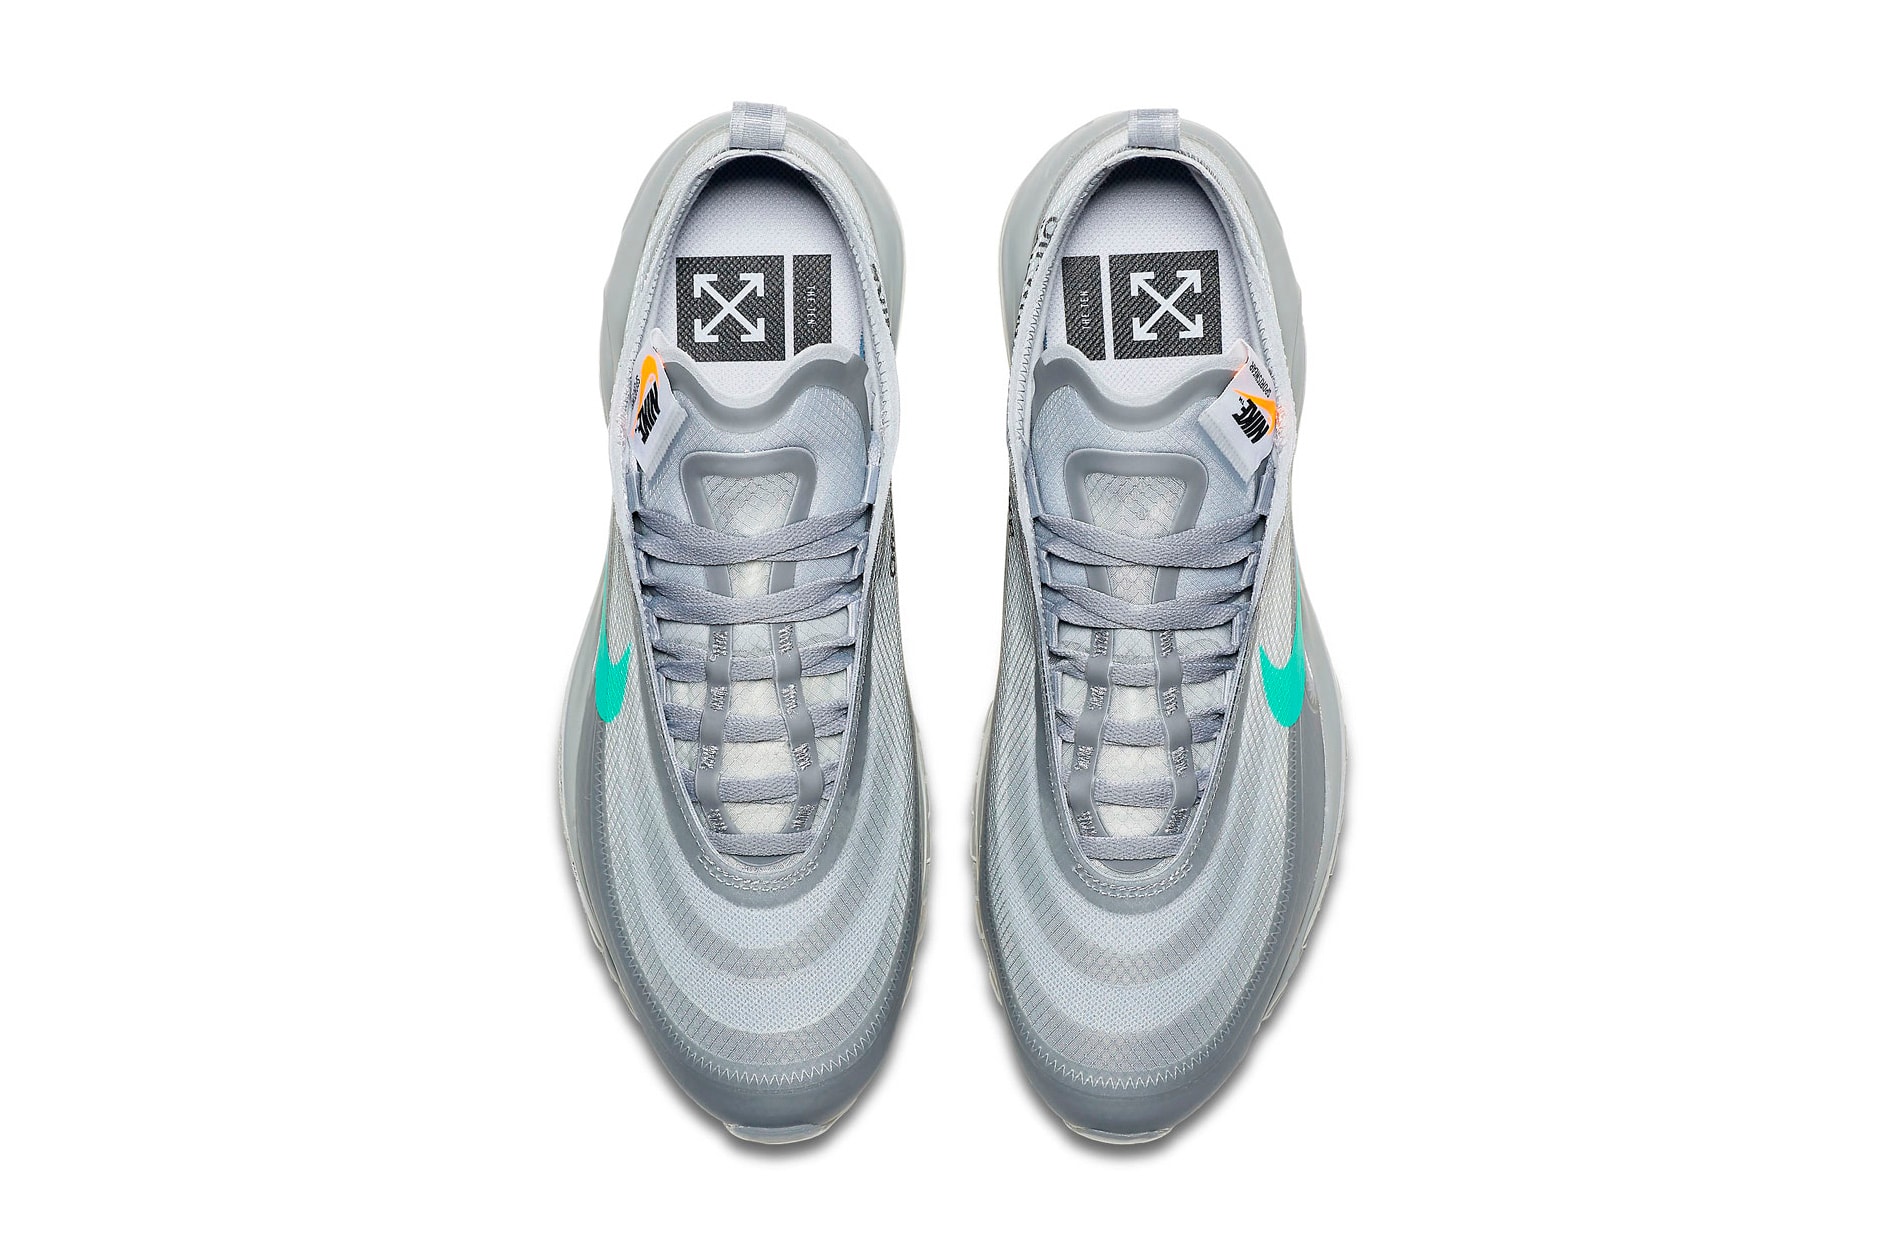 Off-White™ x Nike Air Max 97 “Menta”